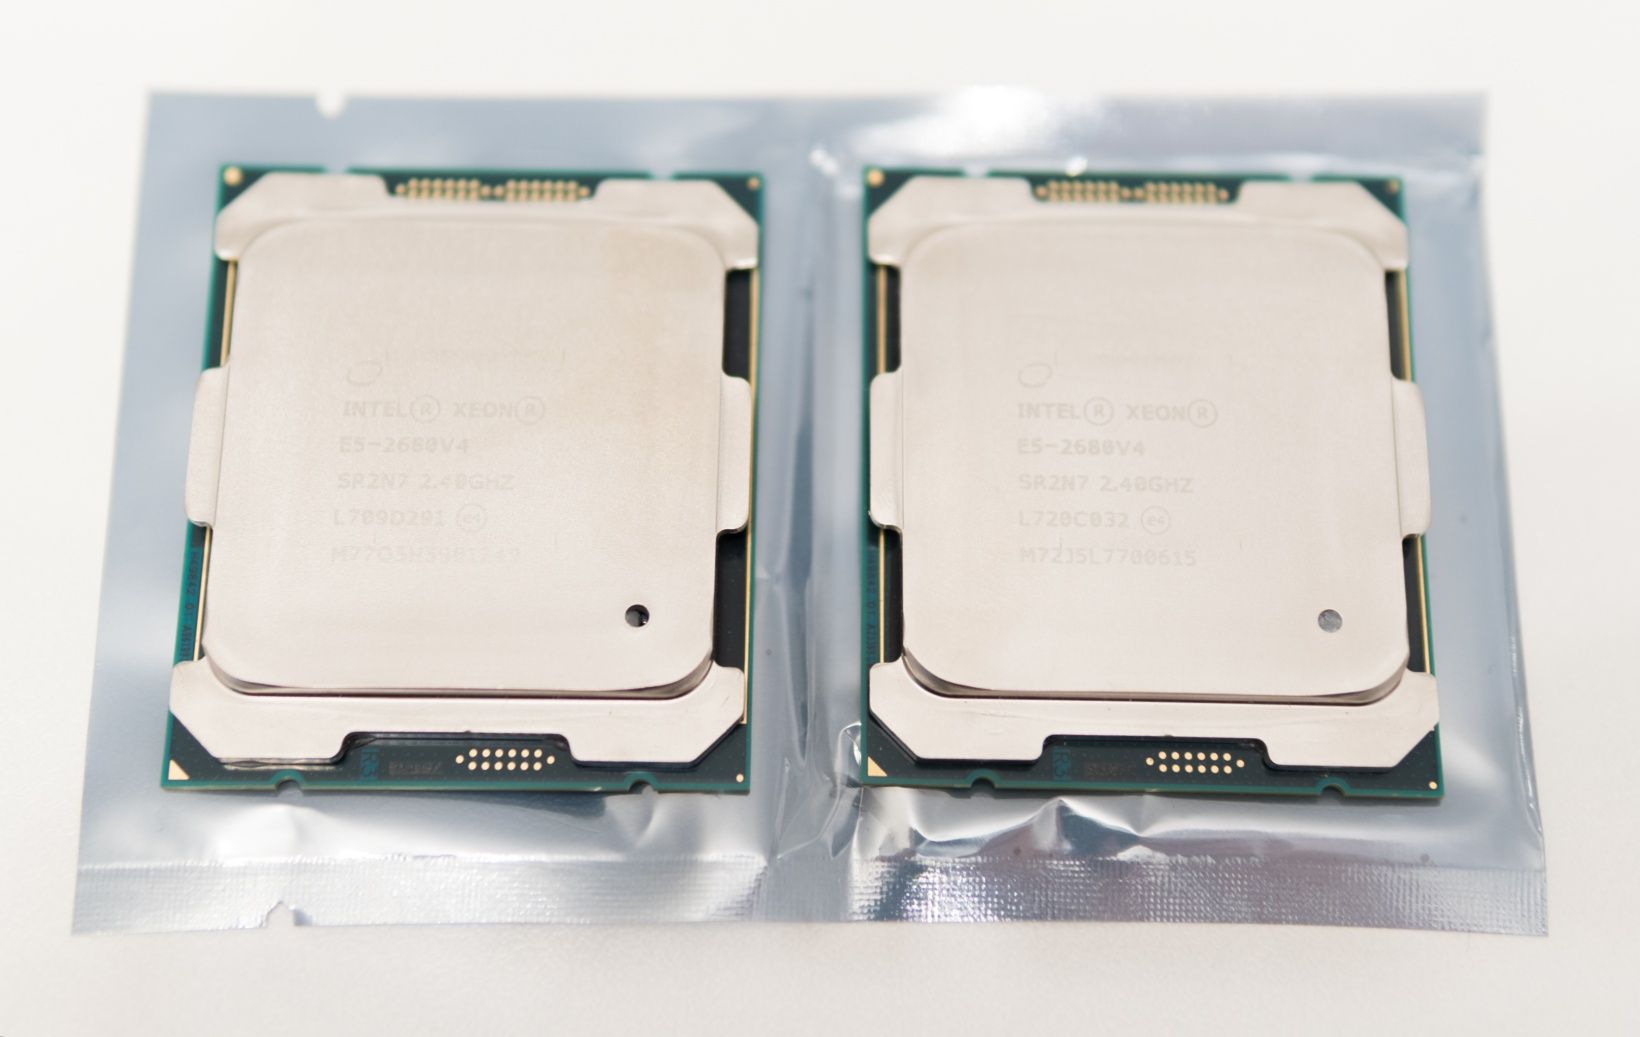 Procesor Intel Xeon E5-2680v4, 14 Cores 28 Threads, 2.4-3.3 Ghz